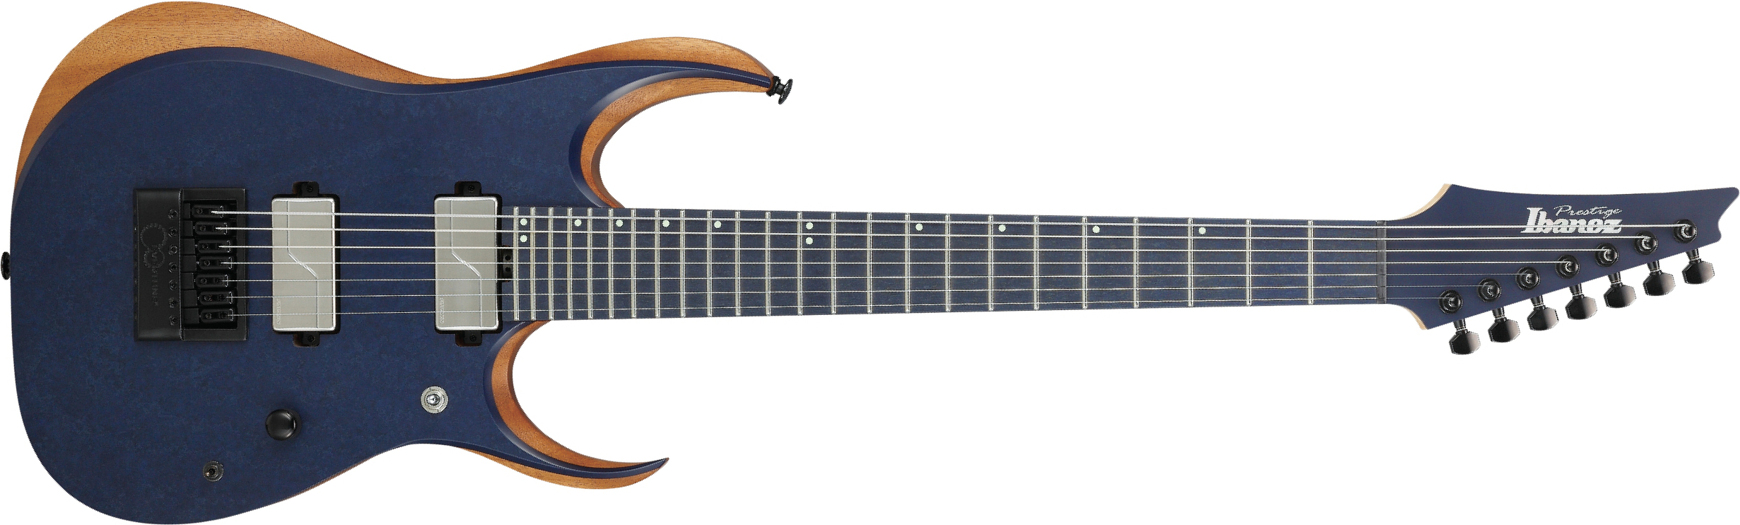 Ibanez Rgdr4527et Prestige Hh Ht Rich - Natural Flat - Guitarra eléctrica con forma de str. - Main picture